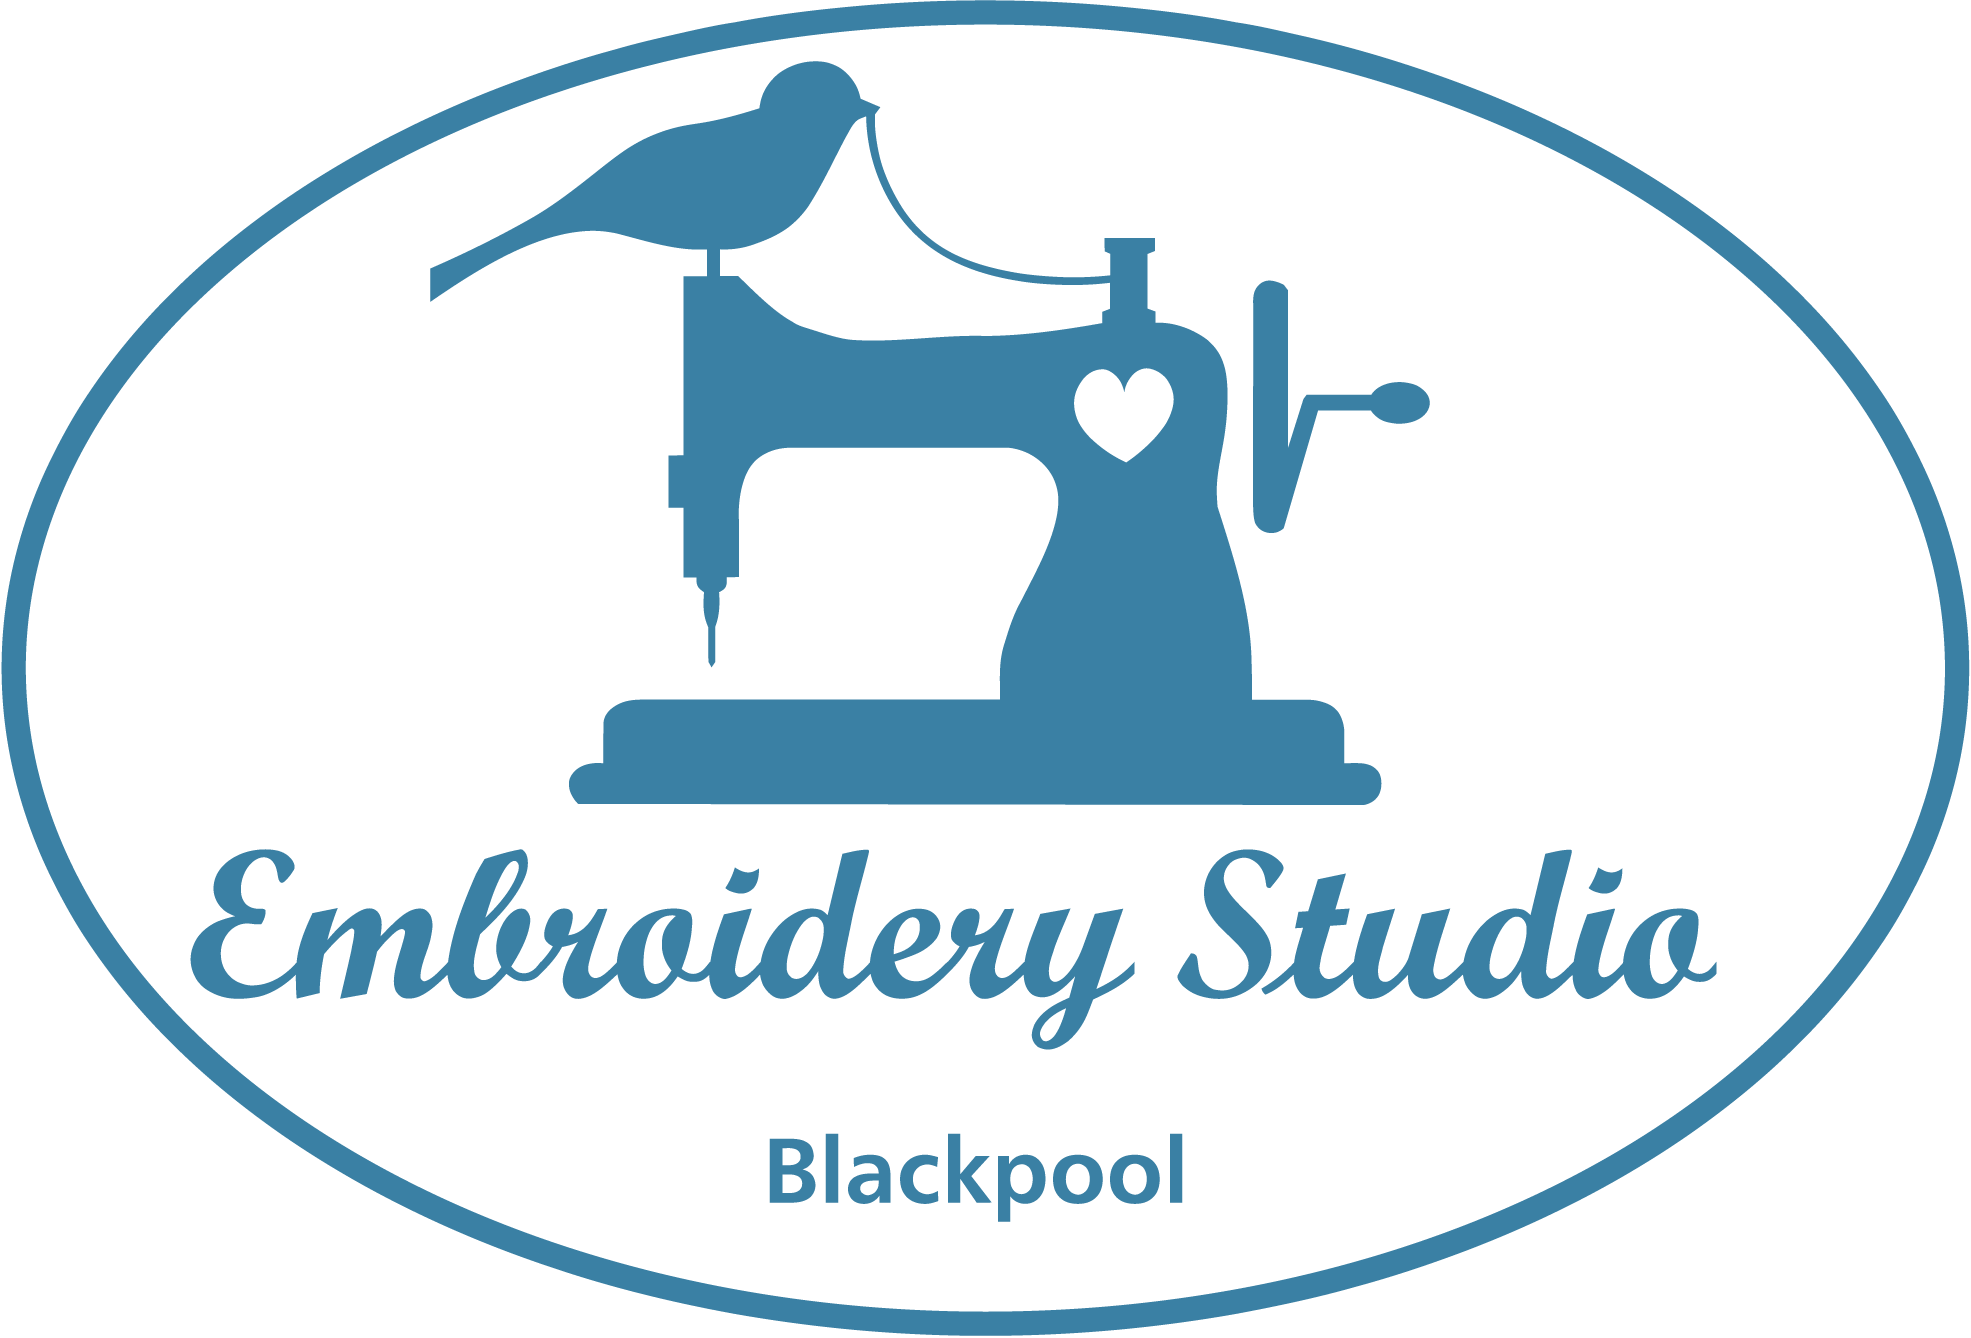 Embroidery Studio Blackpool